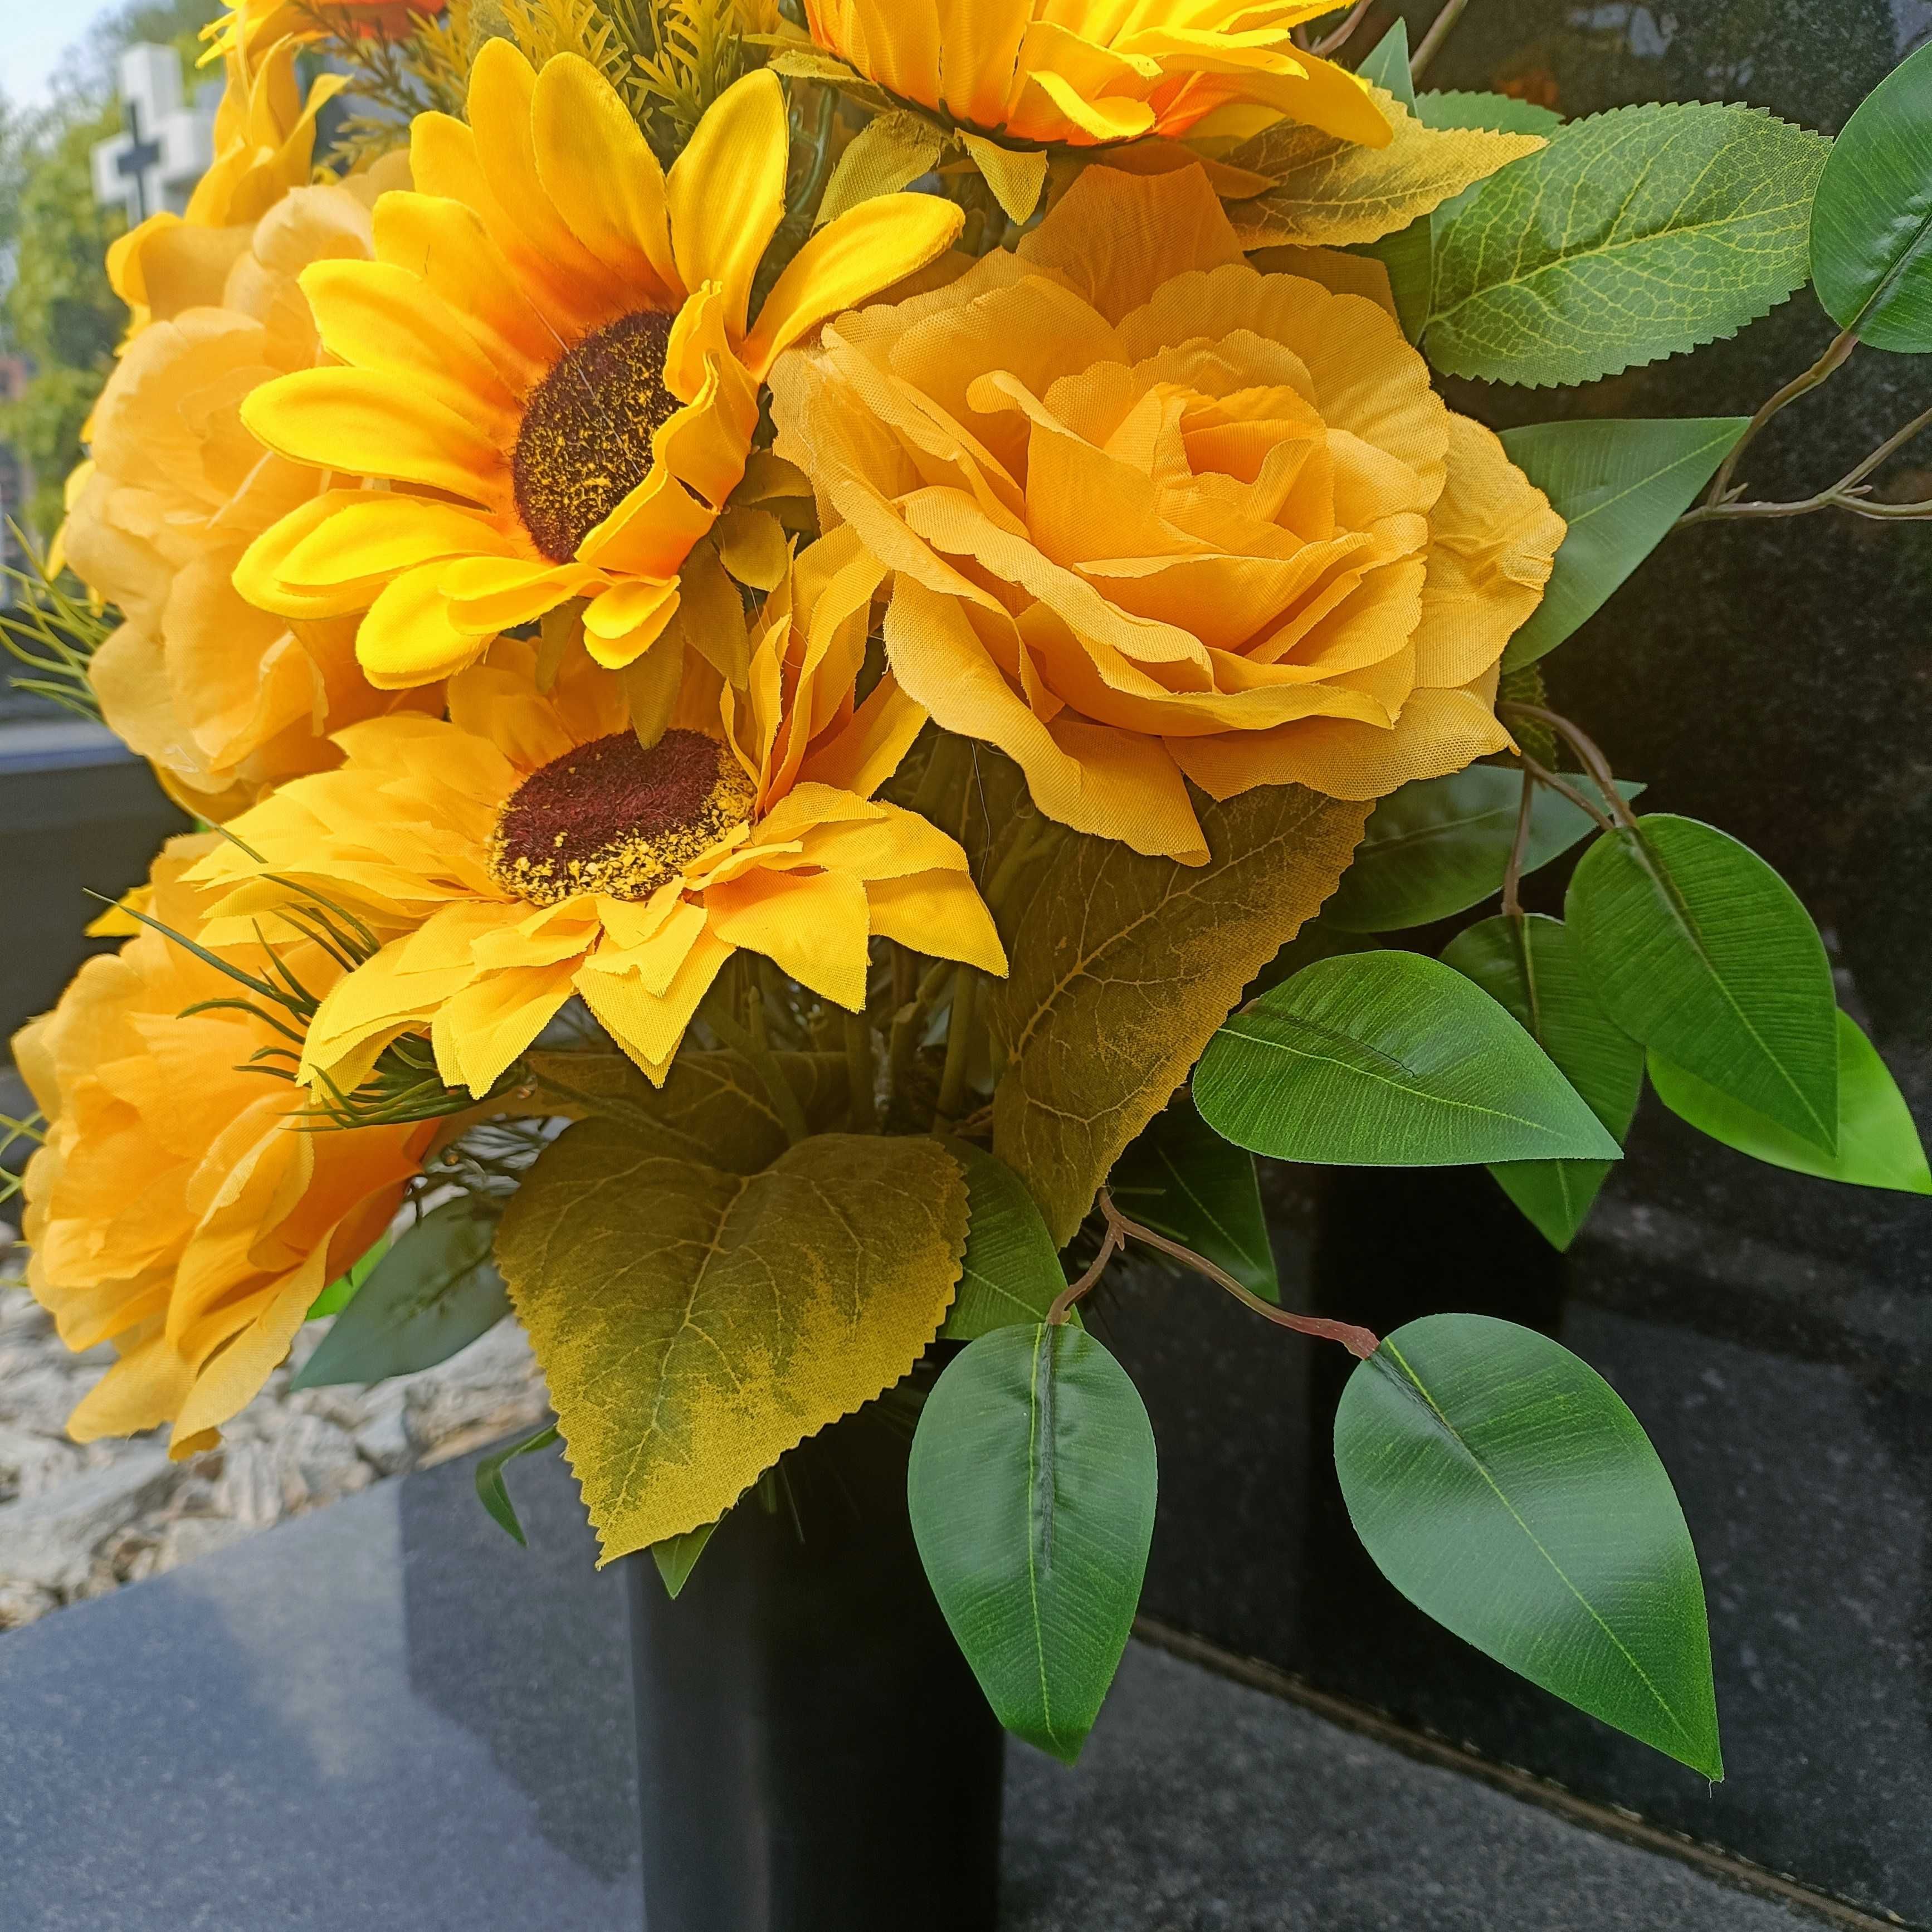 Bukiet wiązanka nagrobna żółta słoneczniki róże rękodzieło polskie